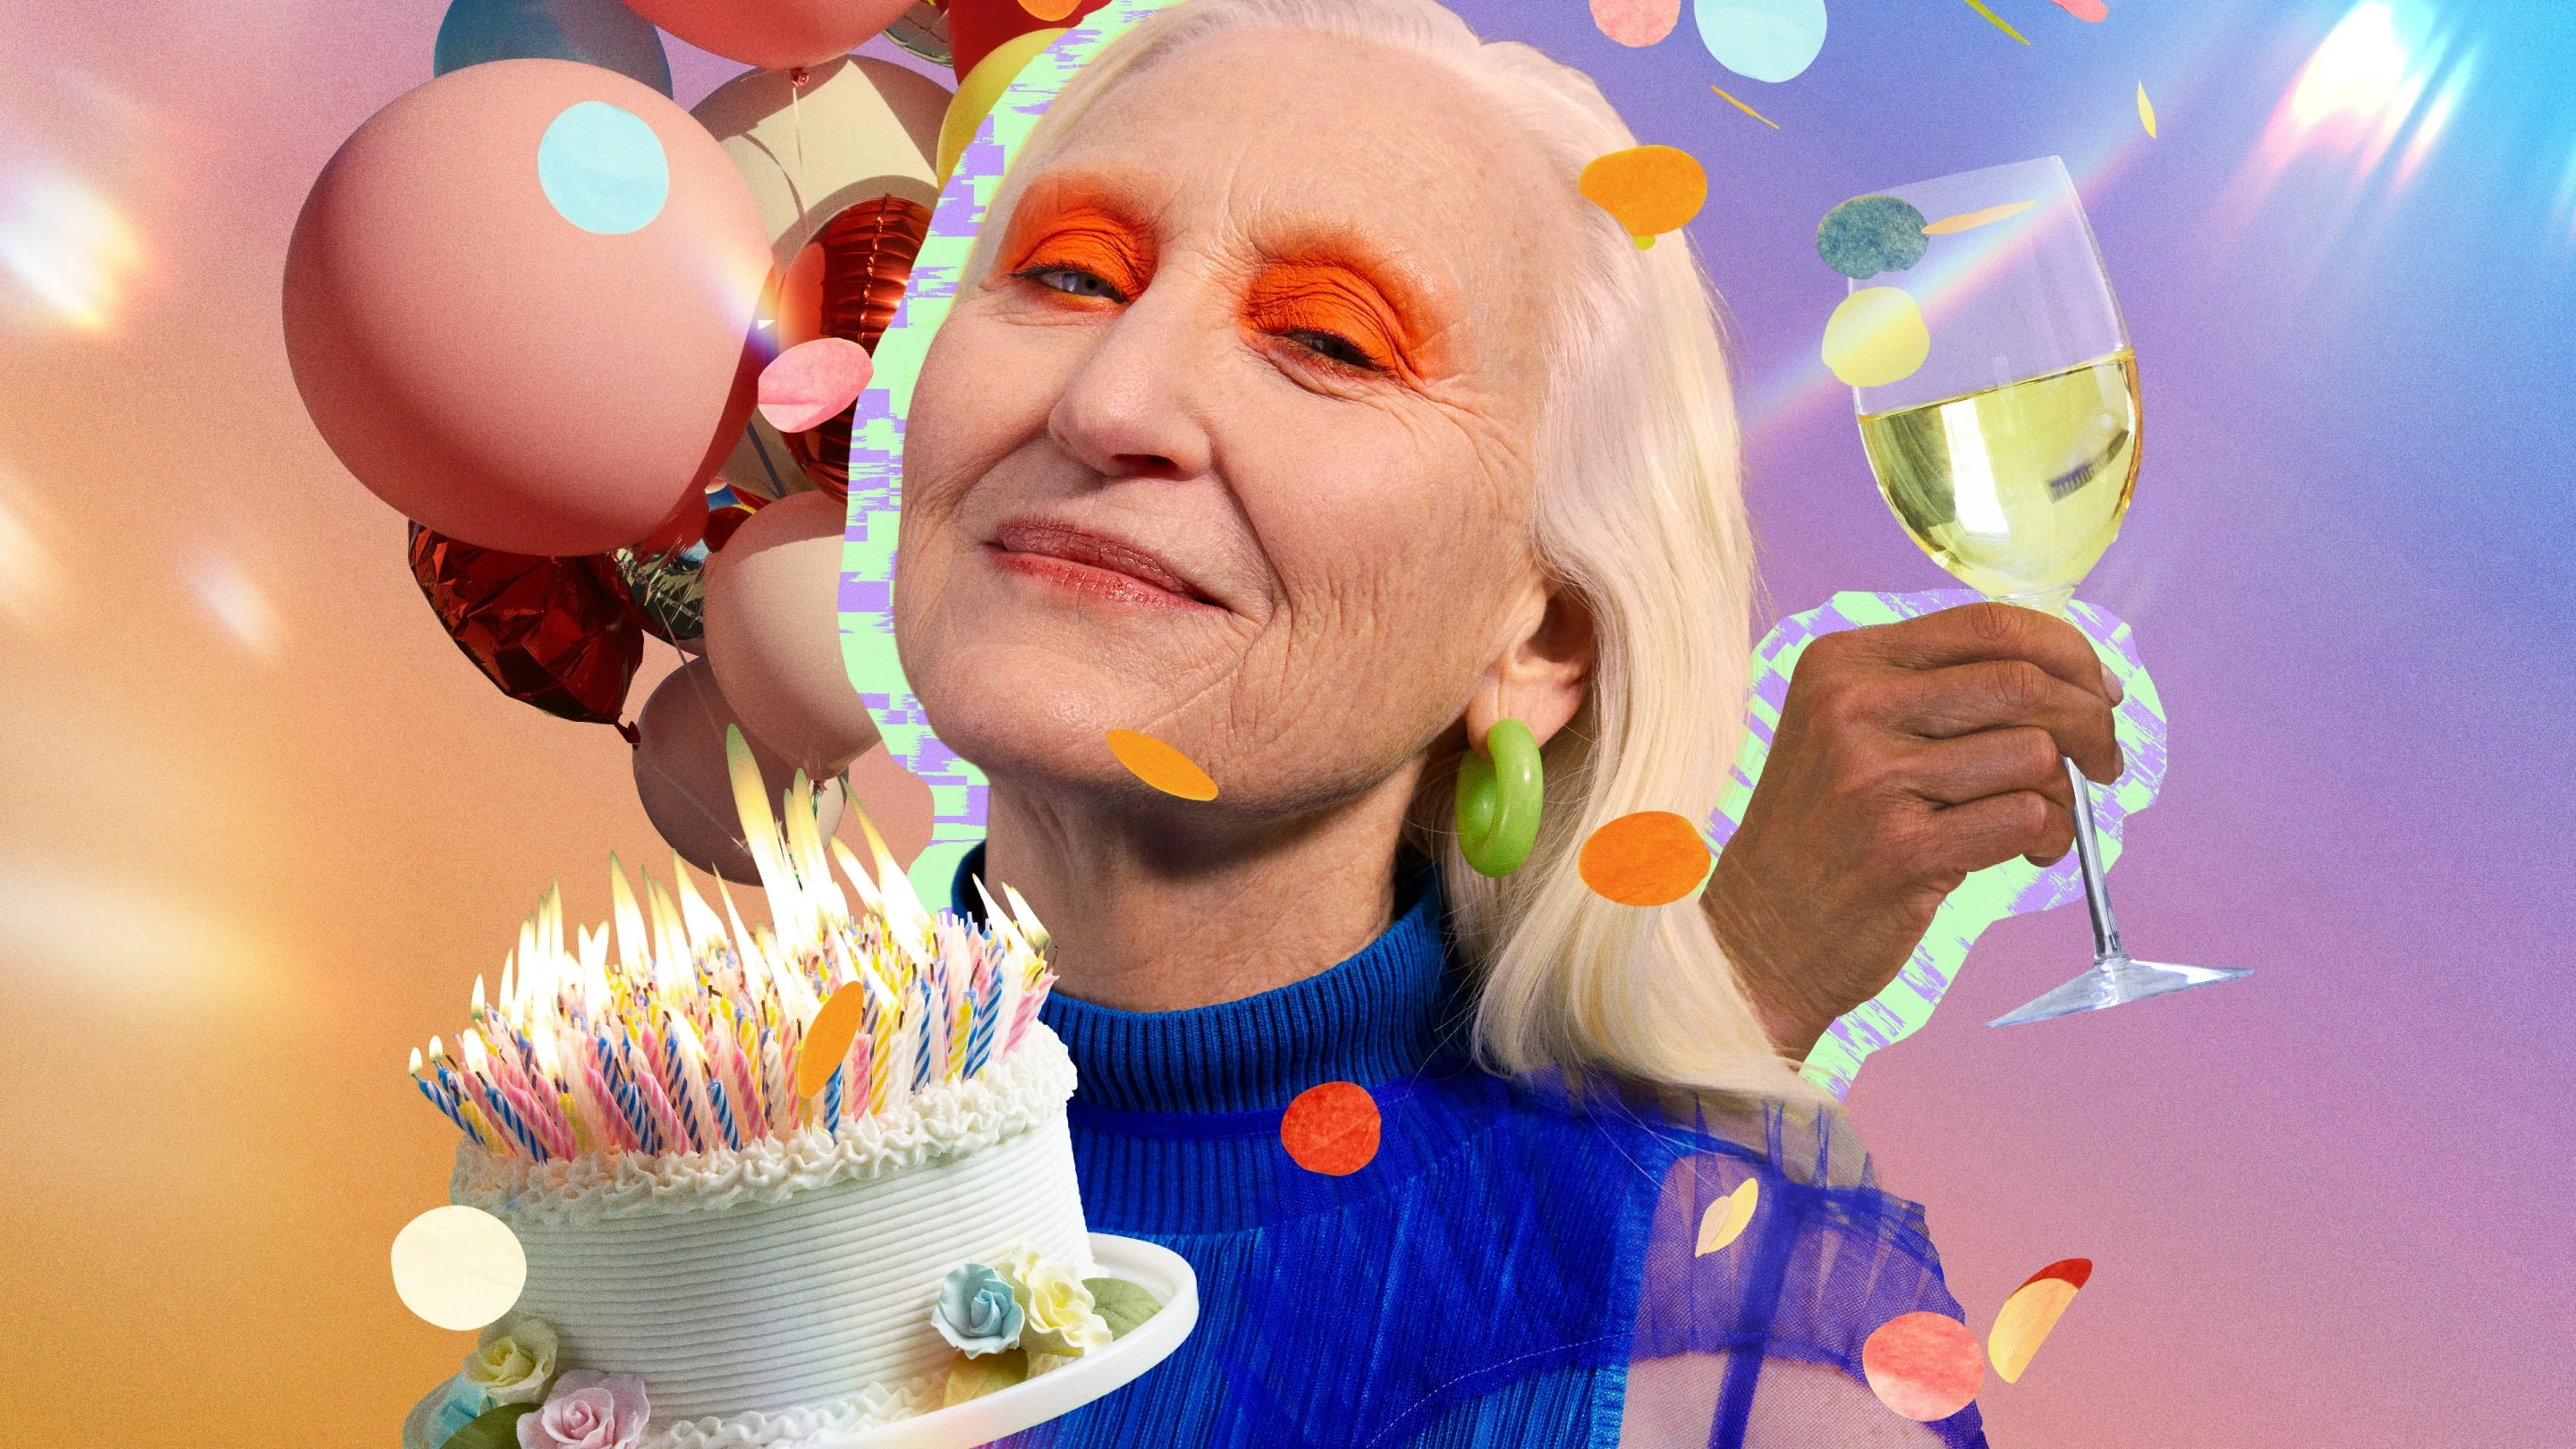 Collage che raffigura una donna bianca anziana con un ombretto sgargiante circondata da palloncini, una mano che regge un calice di vino e una torta di compleanno traboccante di candeline.